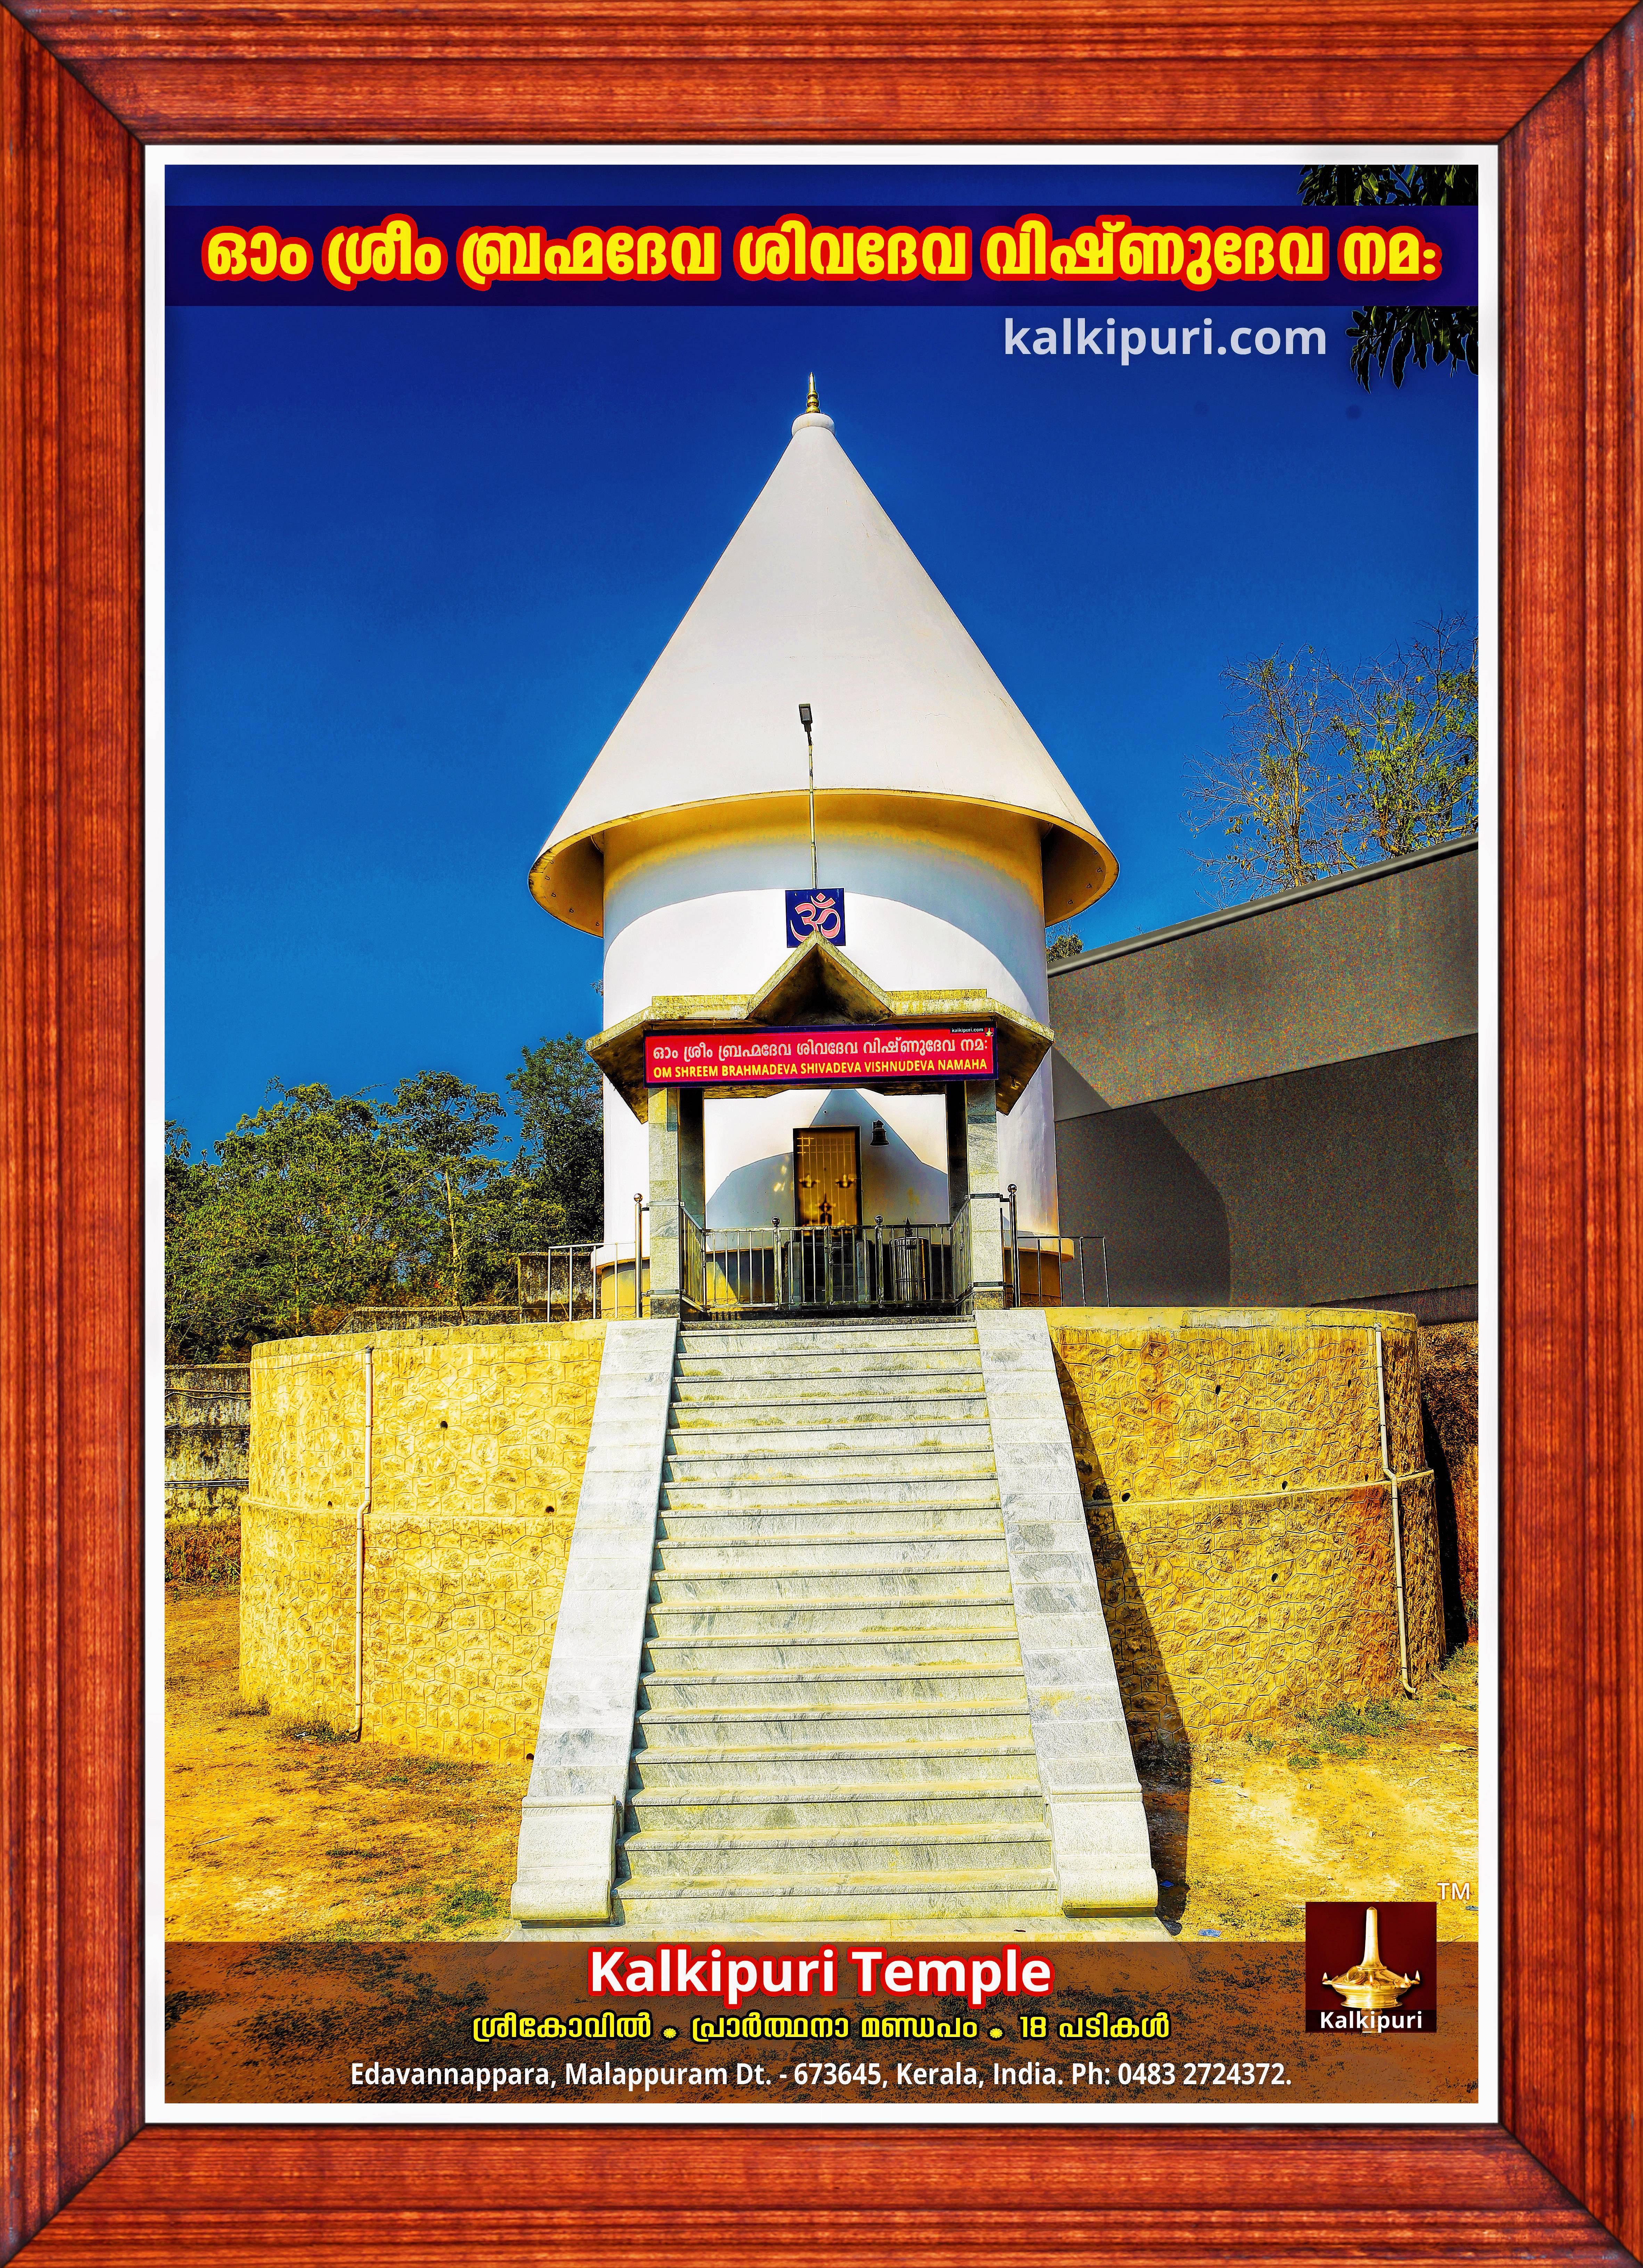 Kalkipuri Temple photos on 19 Feb 2019 ml